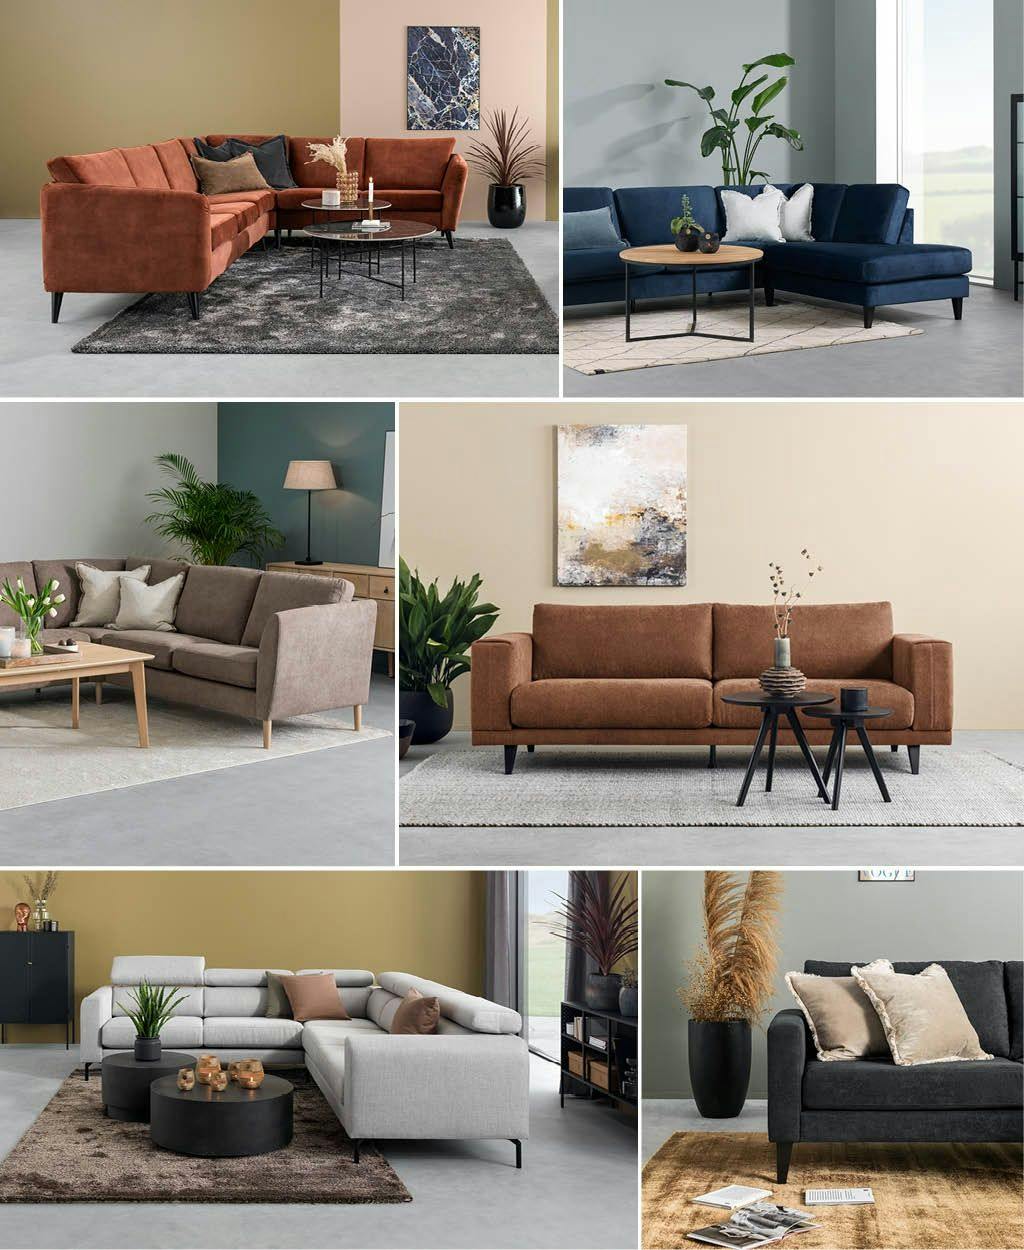 Visning av ulike sofaer